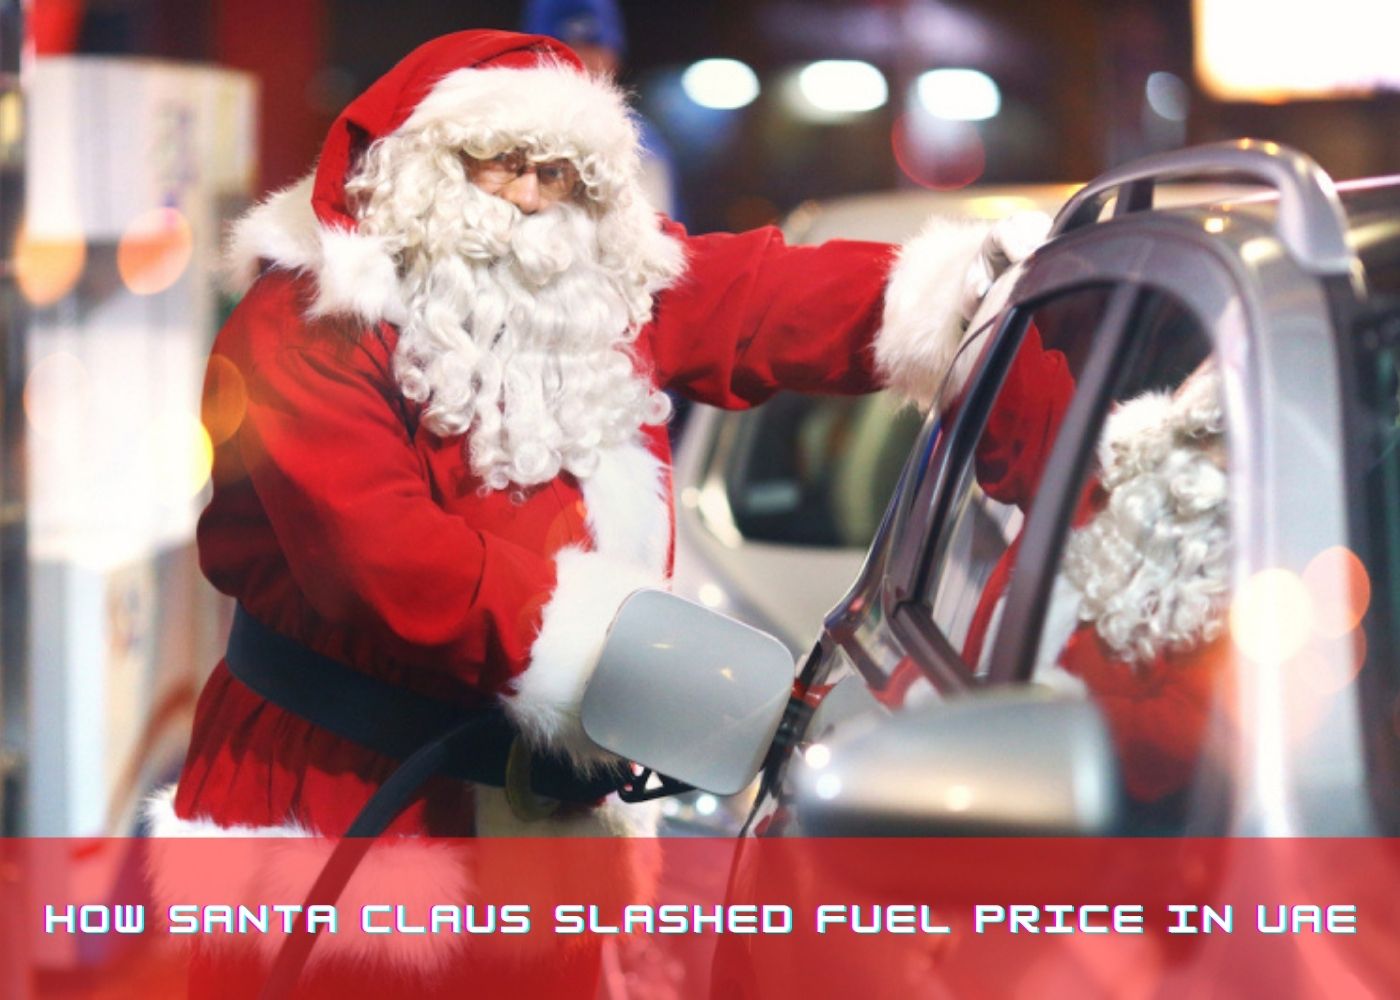 How Santa Claus slashed fuel price in UAE